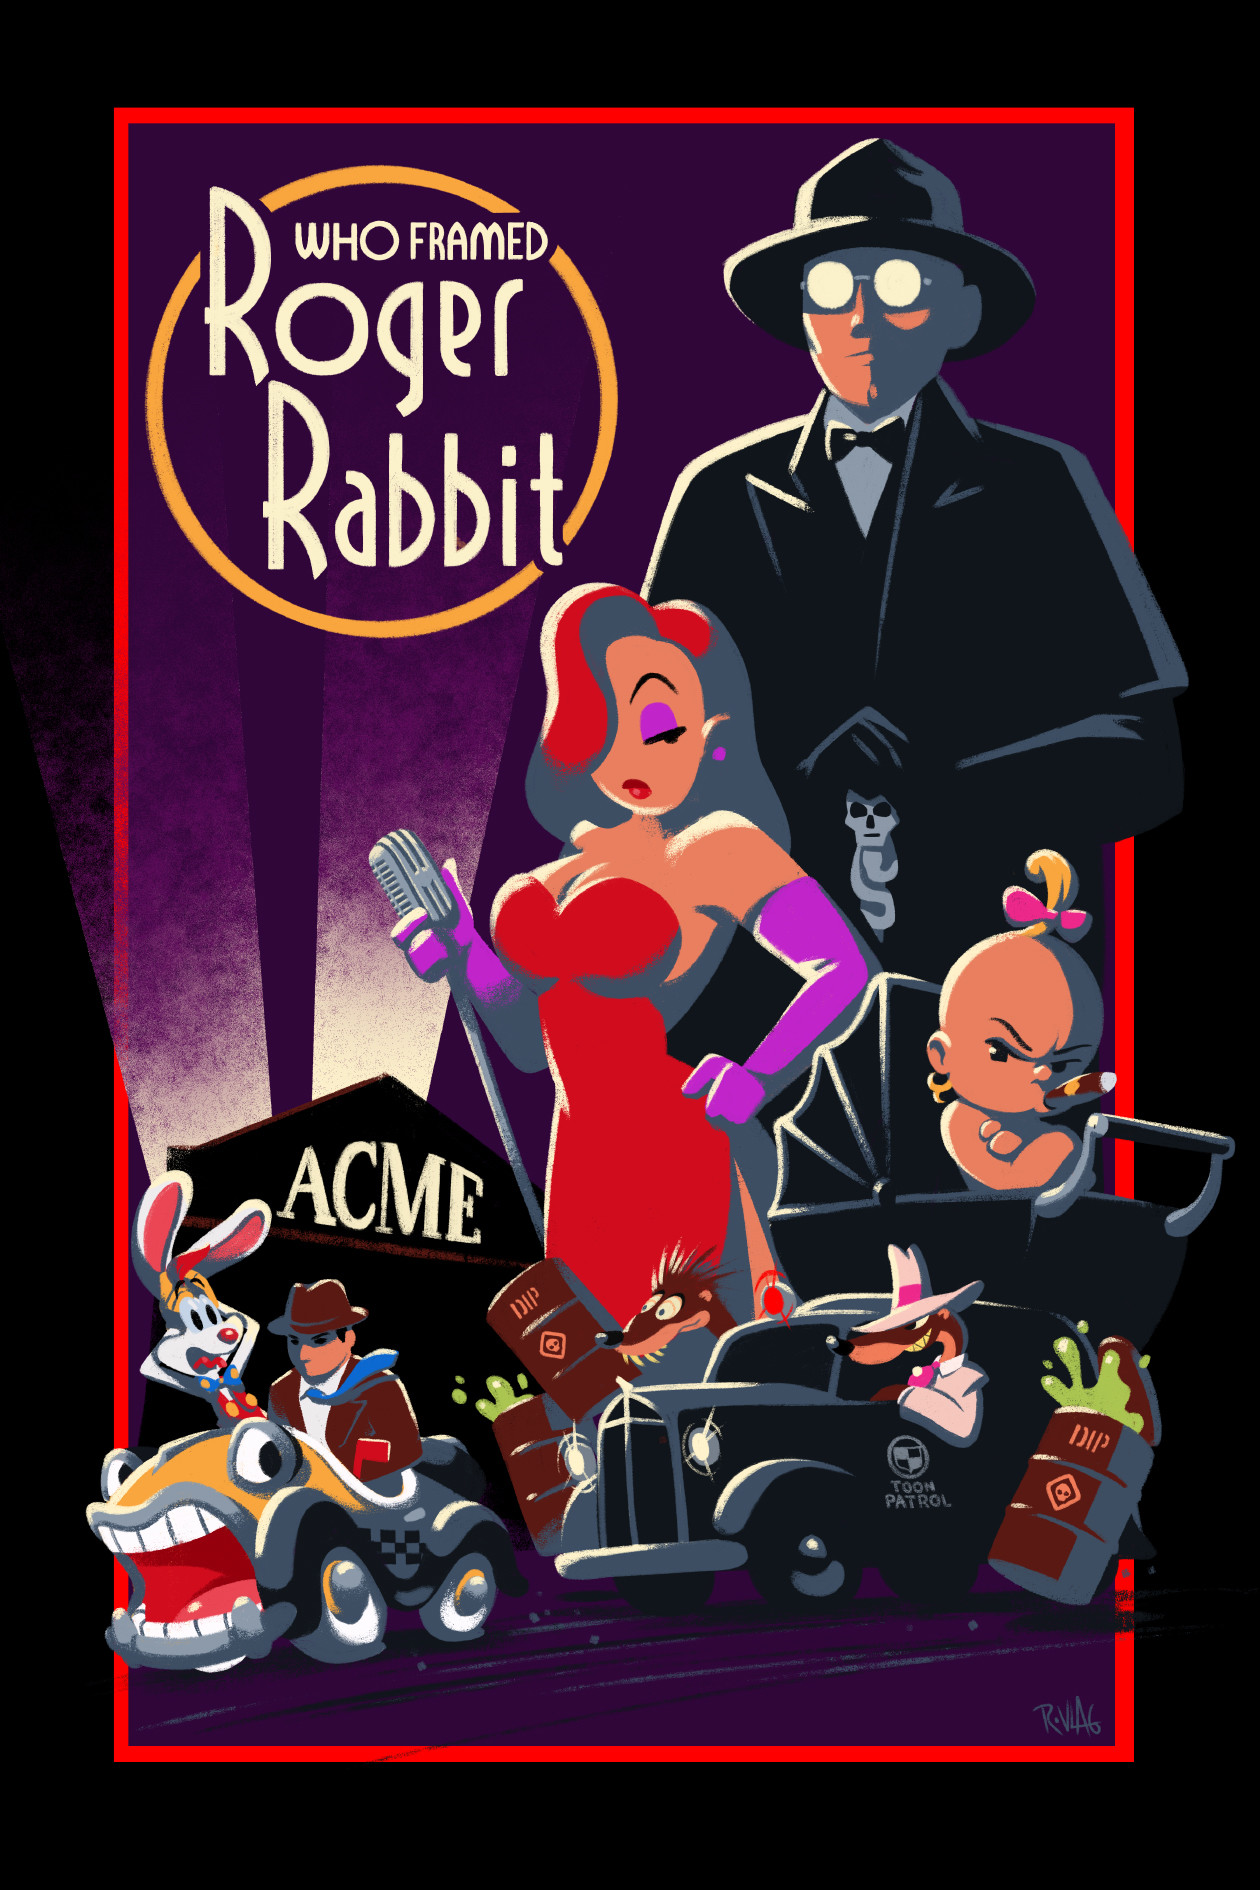 randy-van-der-vlag-who-framed-roger-rabbit-poster-small.jpg